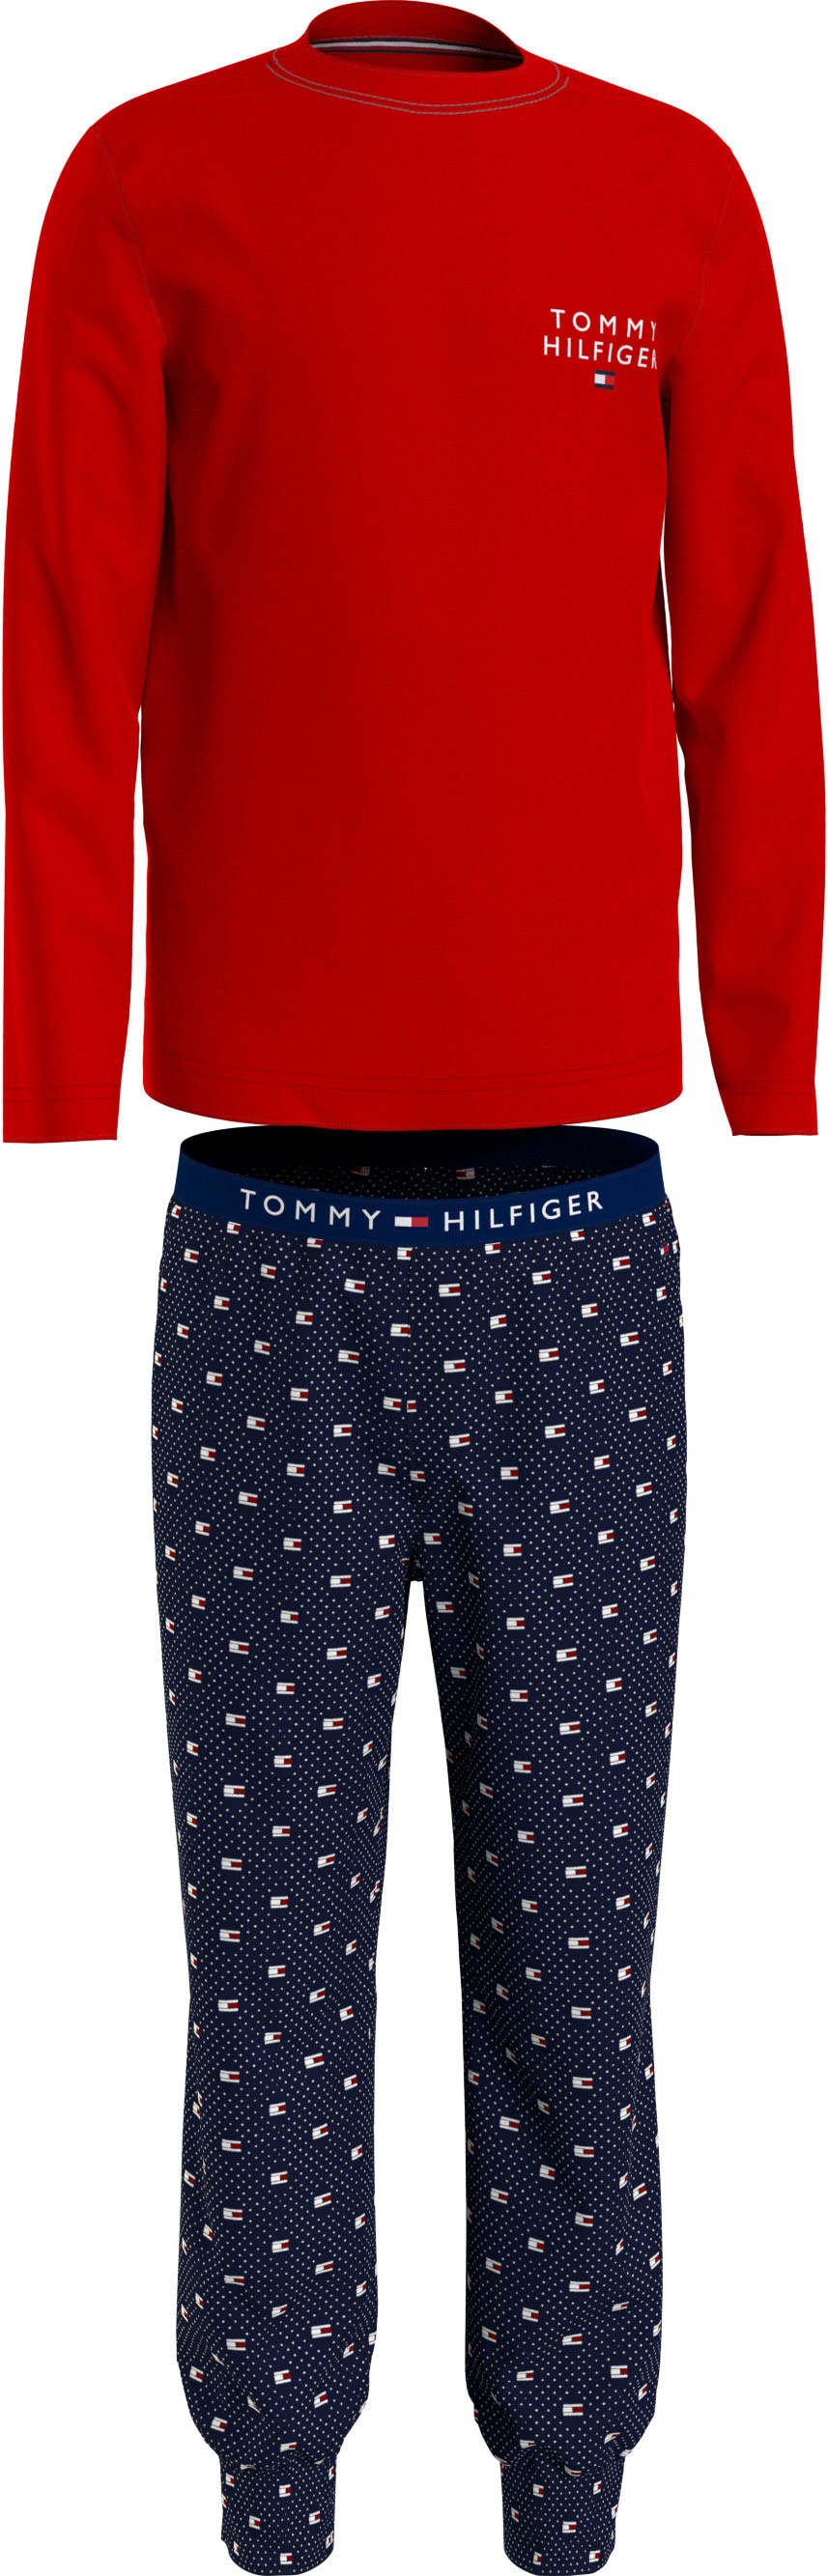 LONG PANTS Branding Tommy bei Underwear SET (2 PRINT«, PJ online Tommy Hilfiger Schlafanzug mit Hilfiger »LS tlg.),